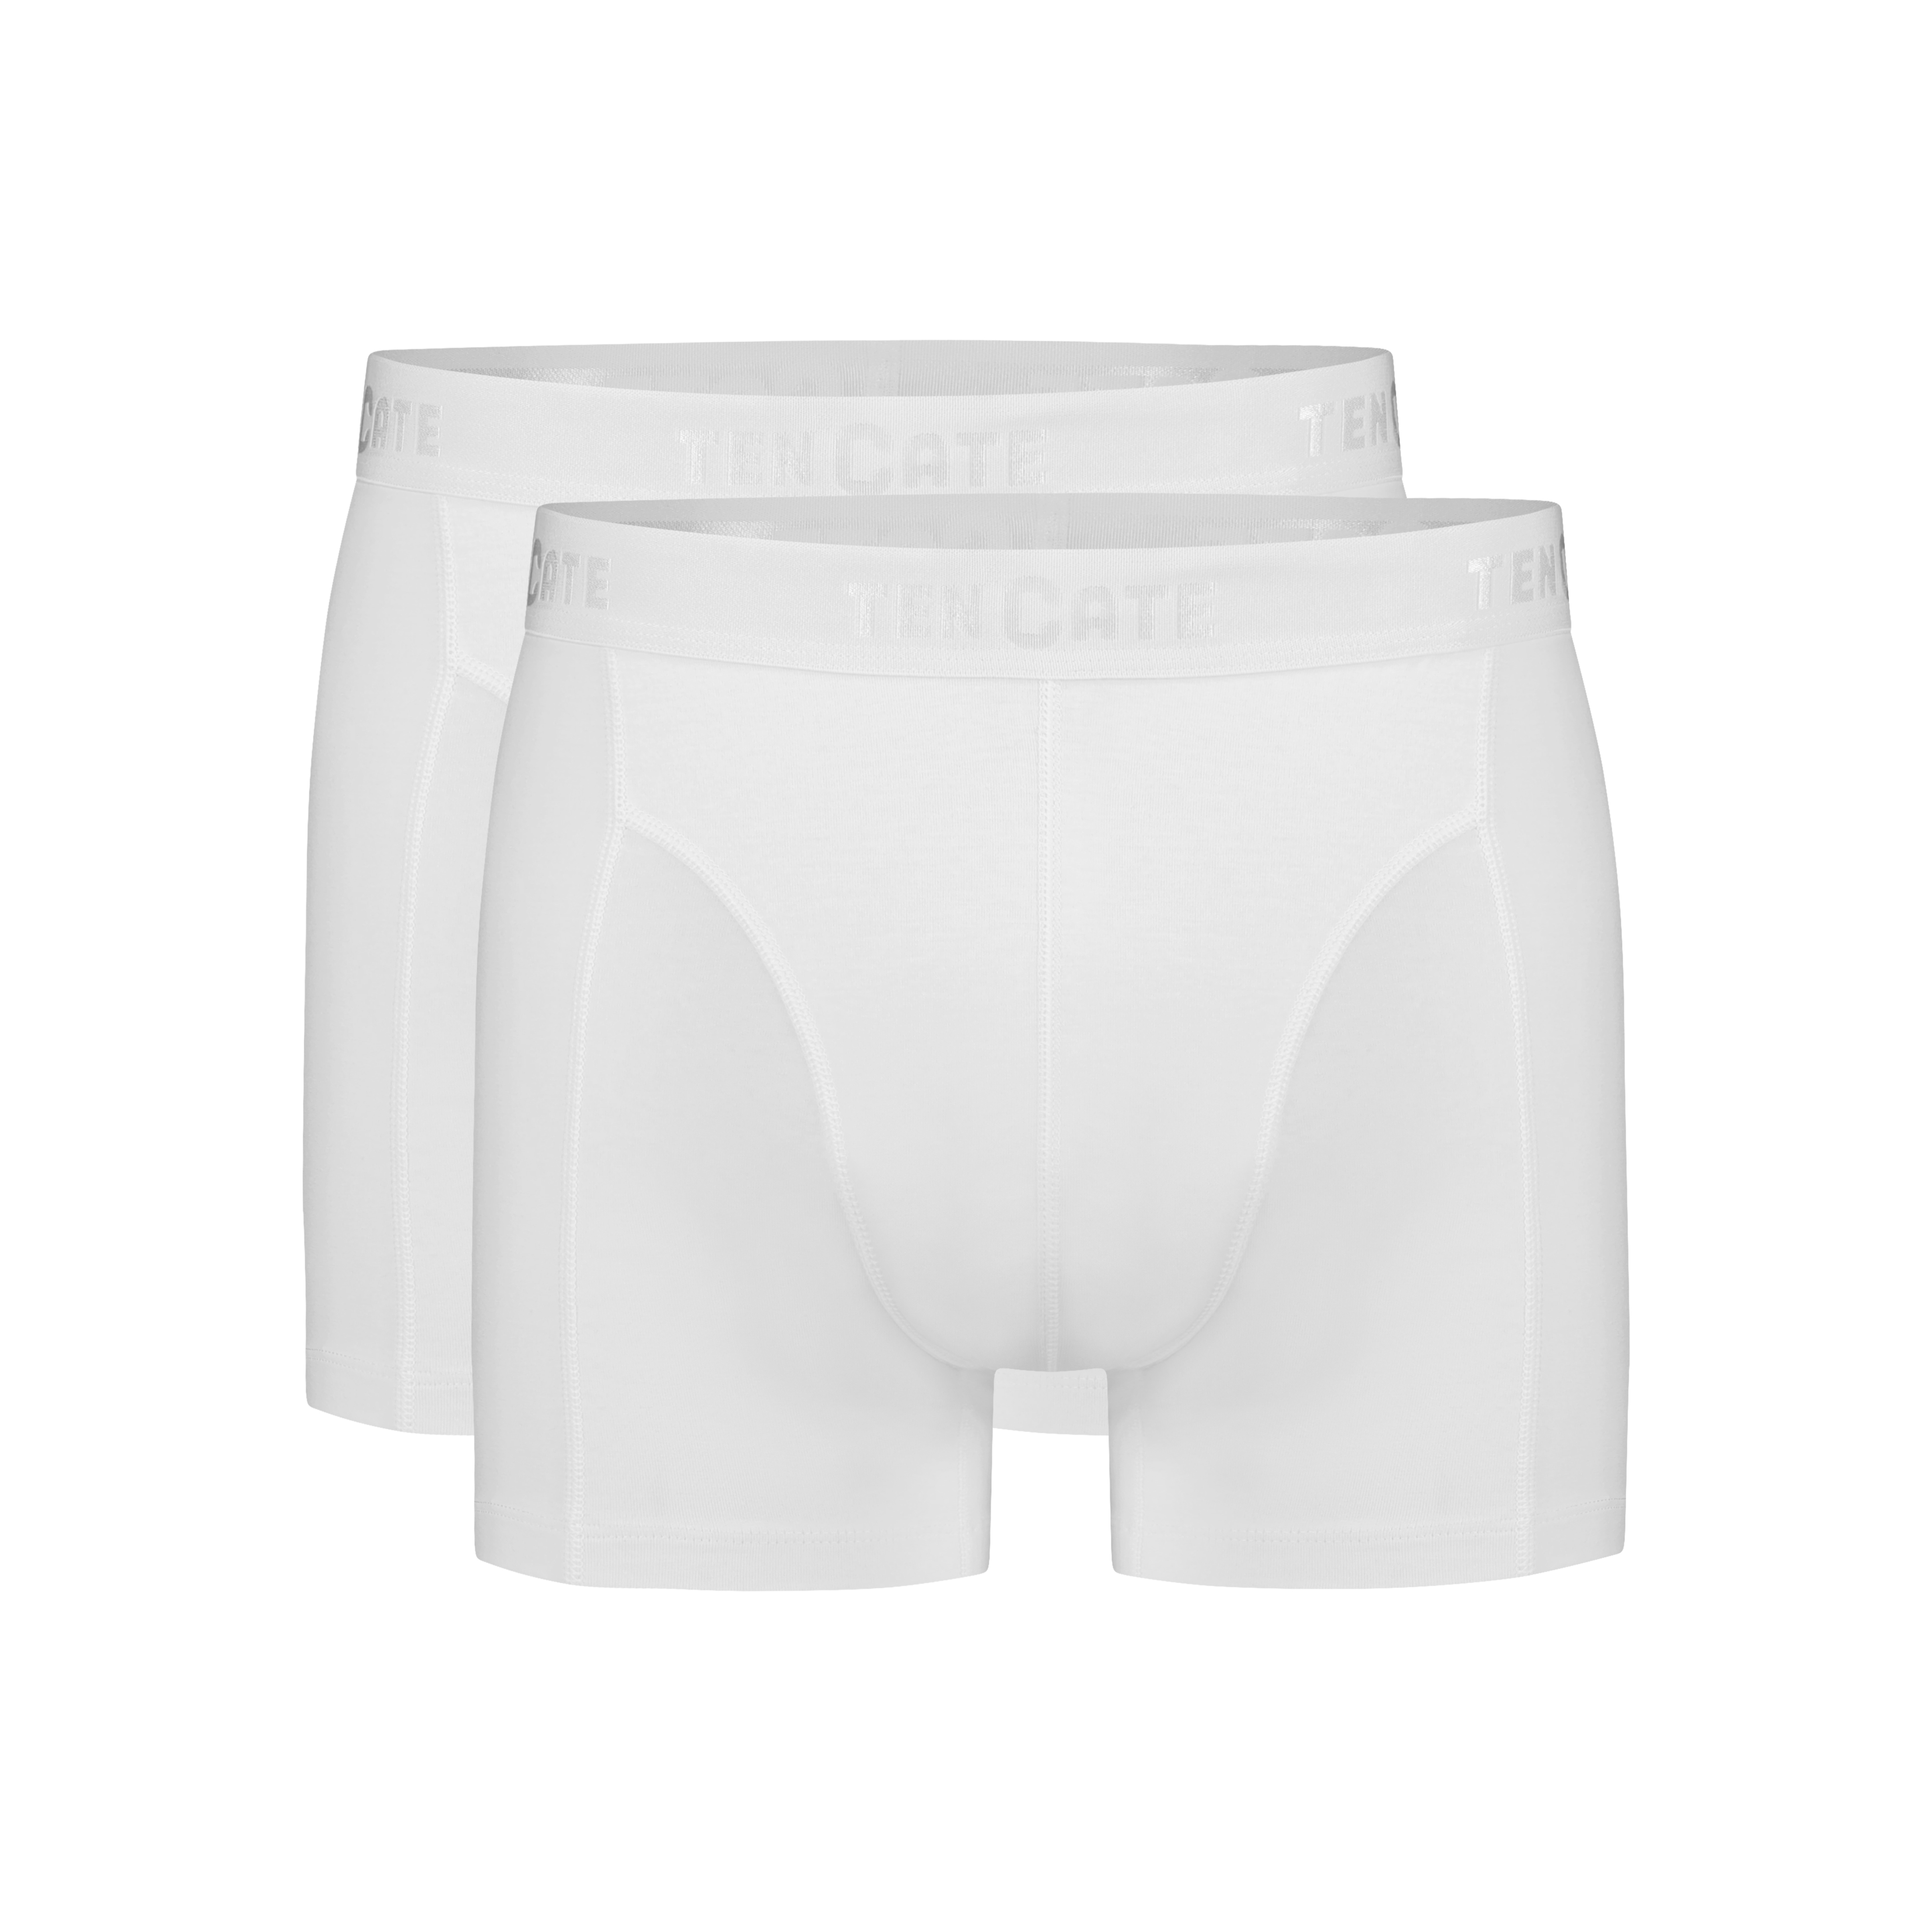 shorts grey melange 2 pack